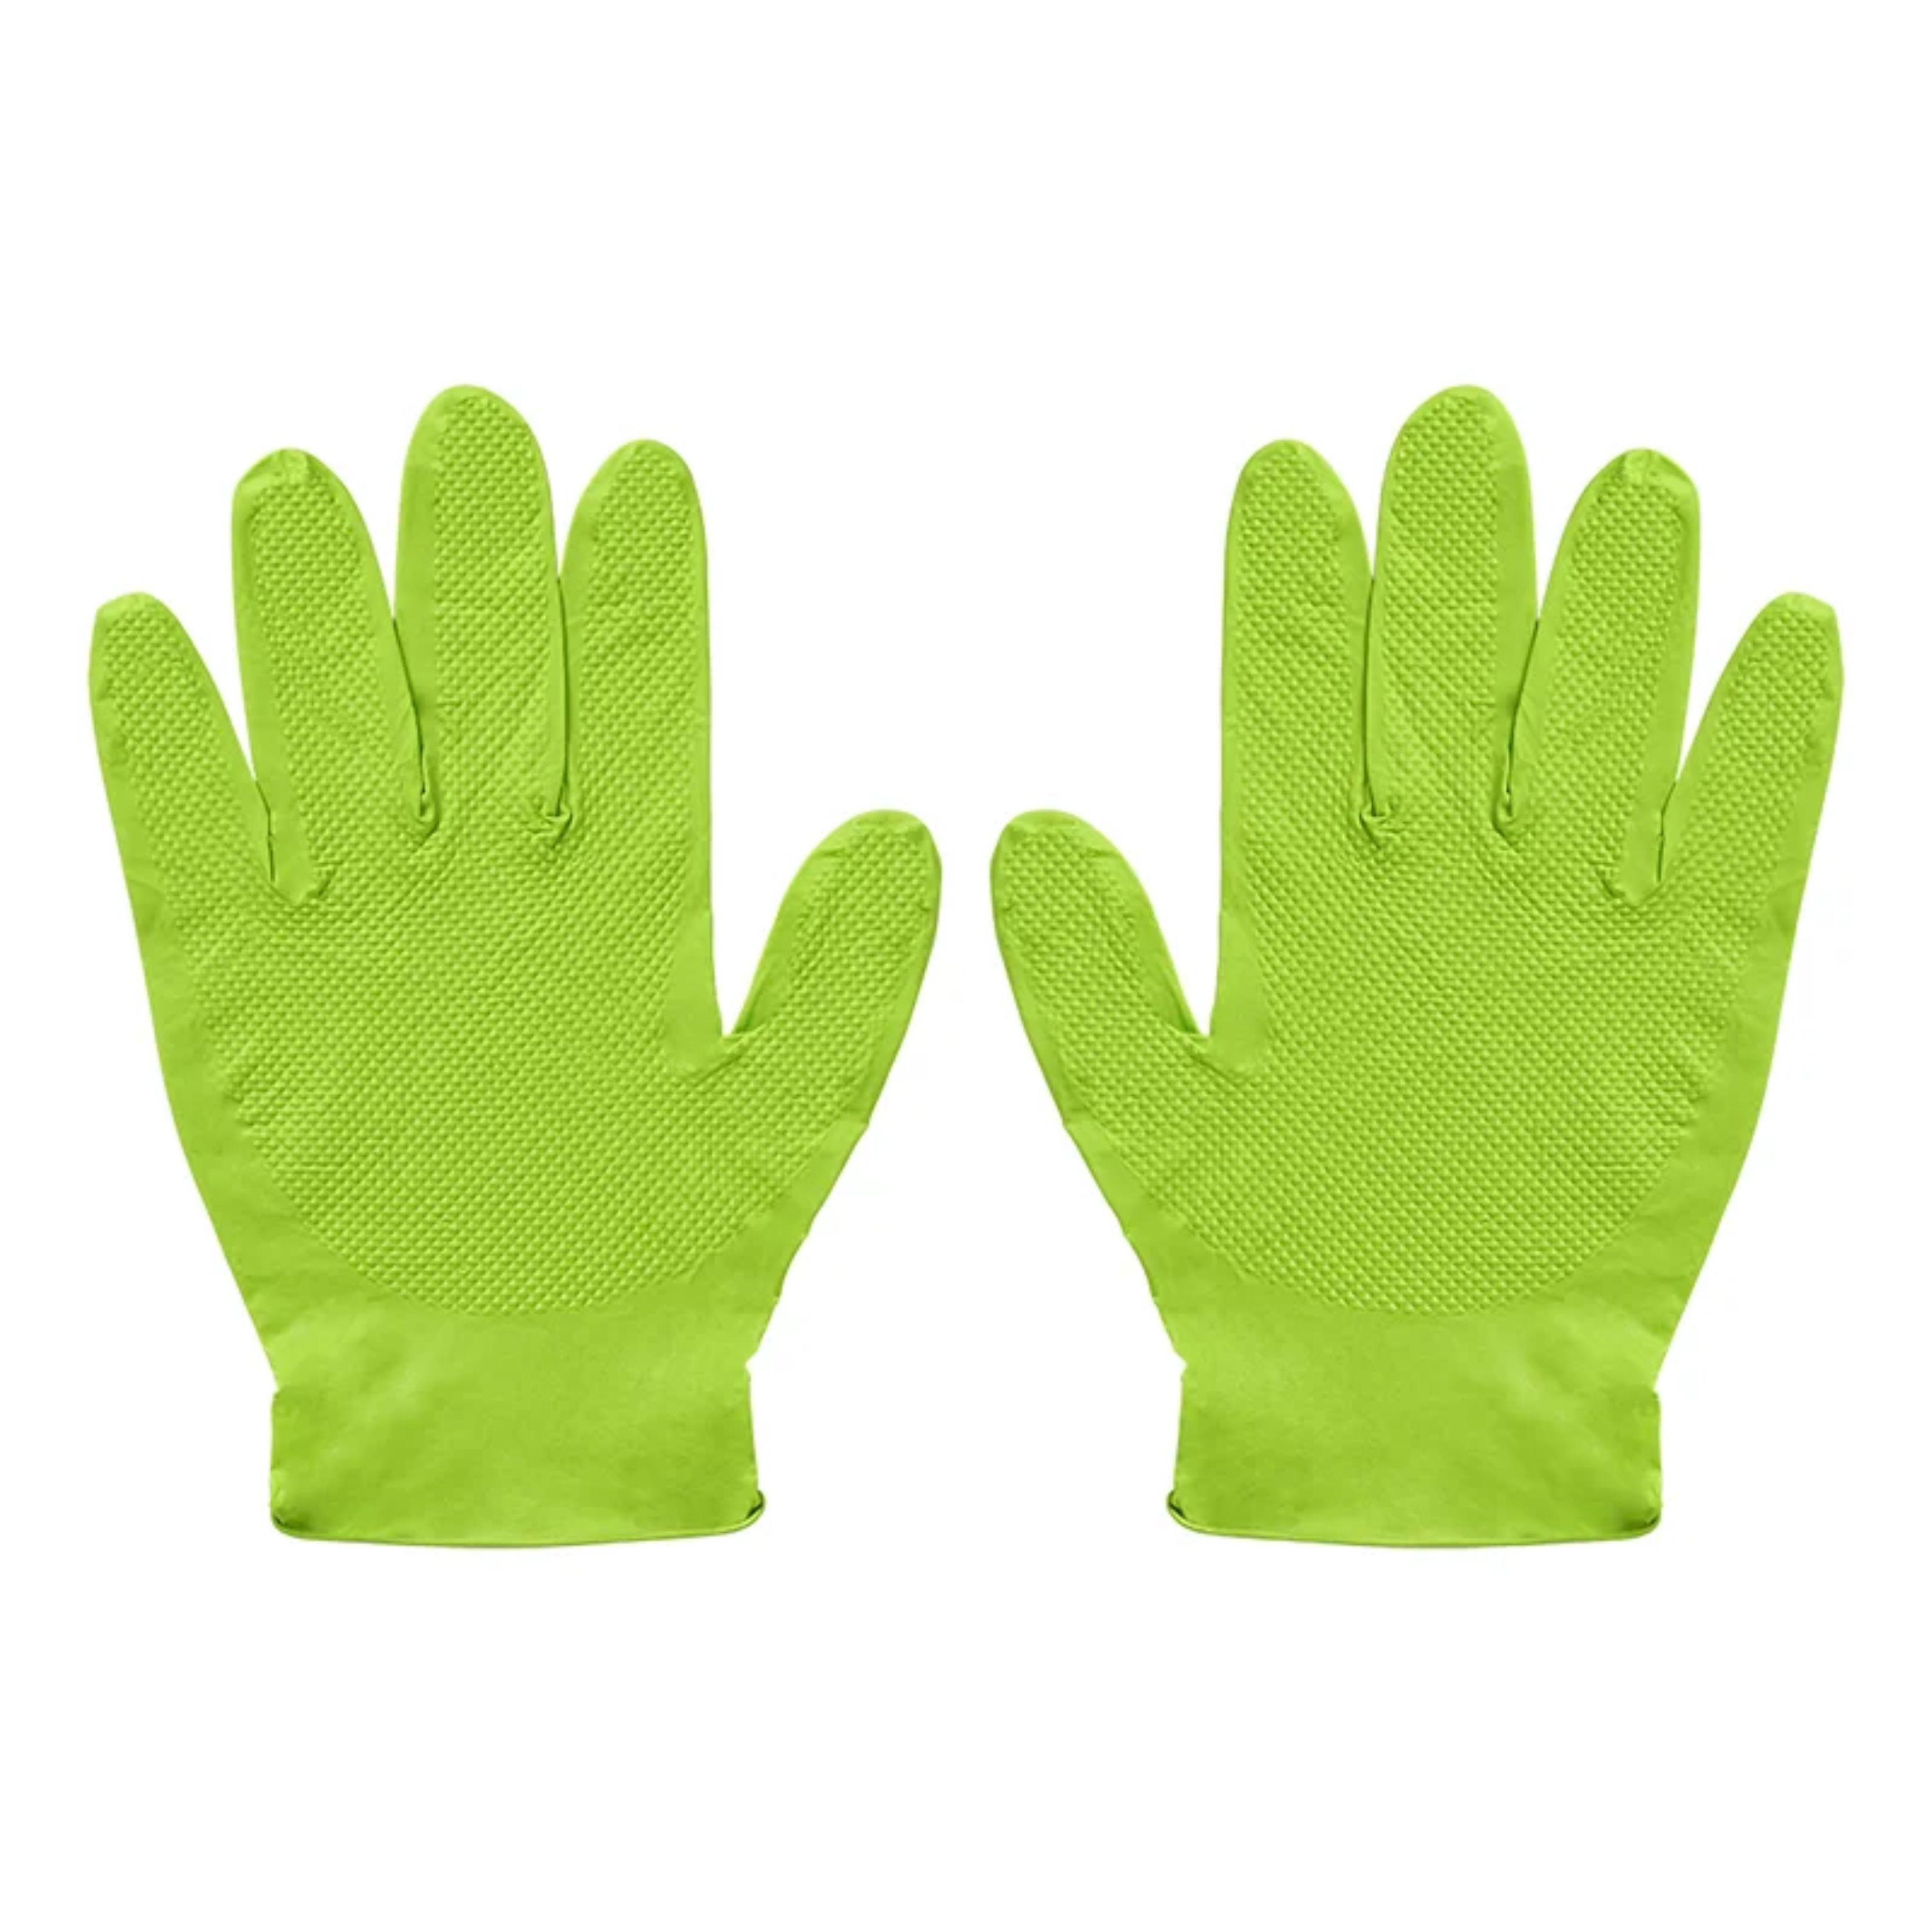 Nitril Einweghandschuhe Einweg-Handschuhe Einmalhandschuhe Gripp-IT Gr.XL grün